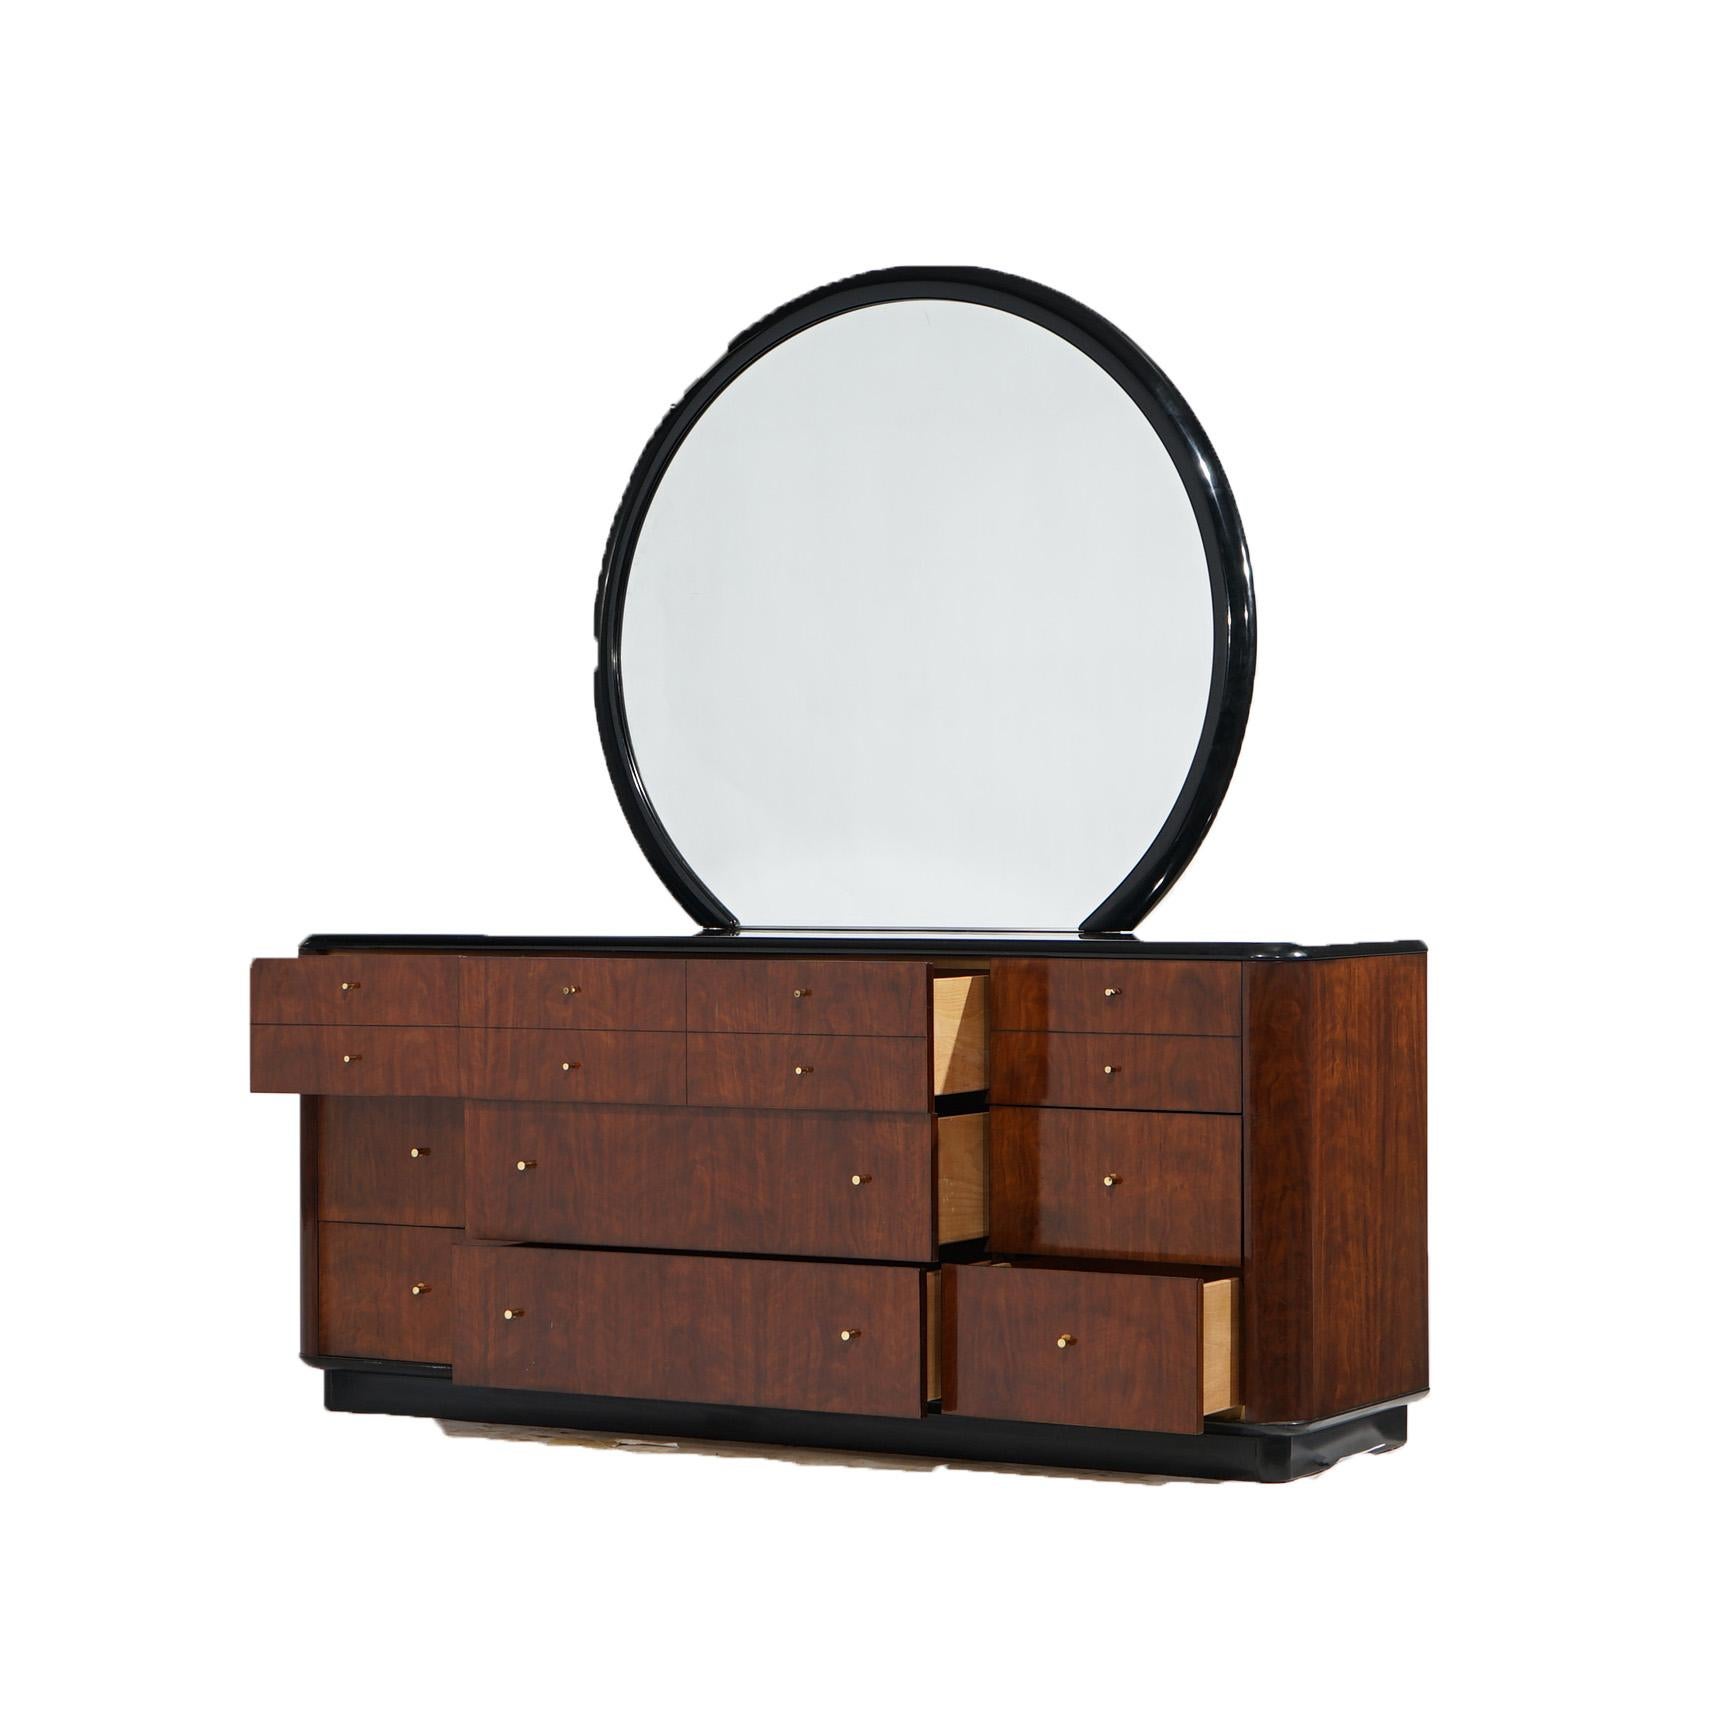 Une commode moderne du milieu du siècle par Drexel dans la ligne A.Profiles offre une construction en acajou avec un miroir circulaire surmontant une boîte avec un dessus ébonisé sur une boîte avec des tiroirs de différentes tailles, soulevée sur